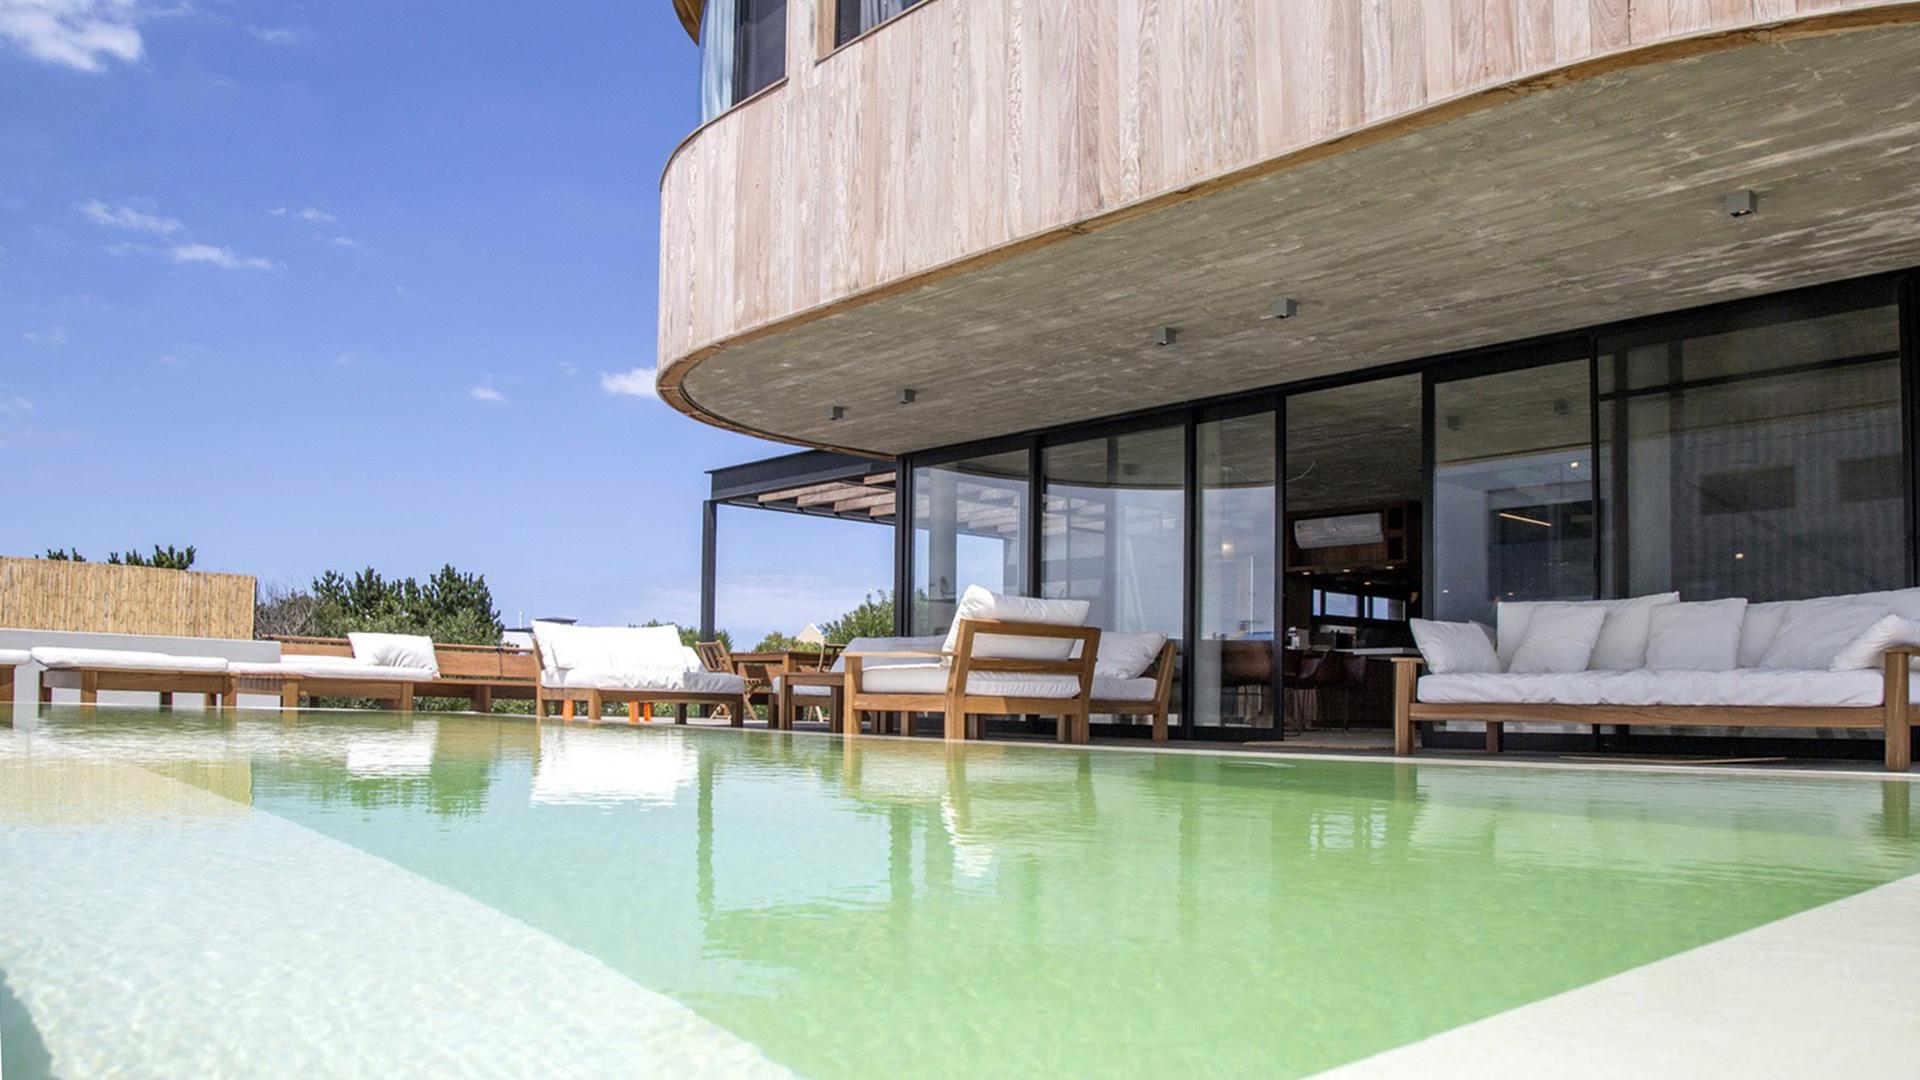 Cozy Modern House in Town located in Jose Ignacio, Punta del Este, Uruguay, listed by Curiocity Villas.